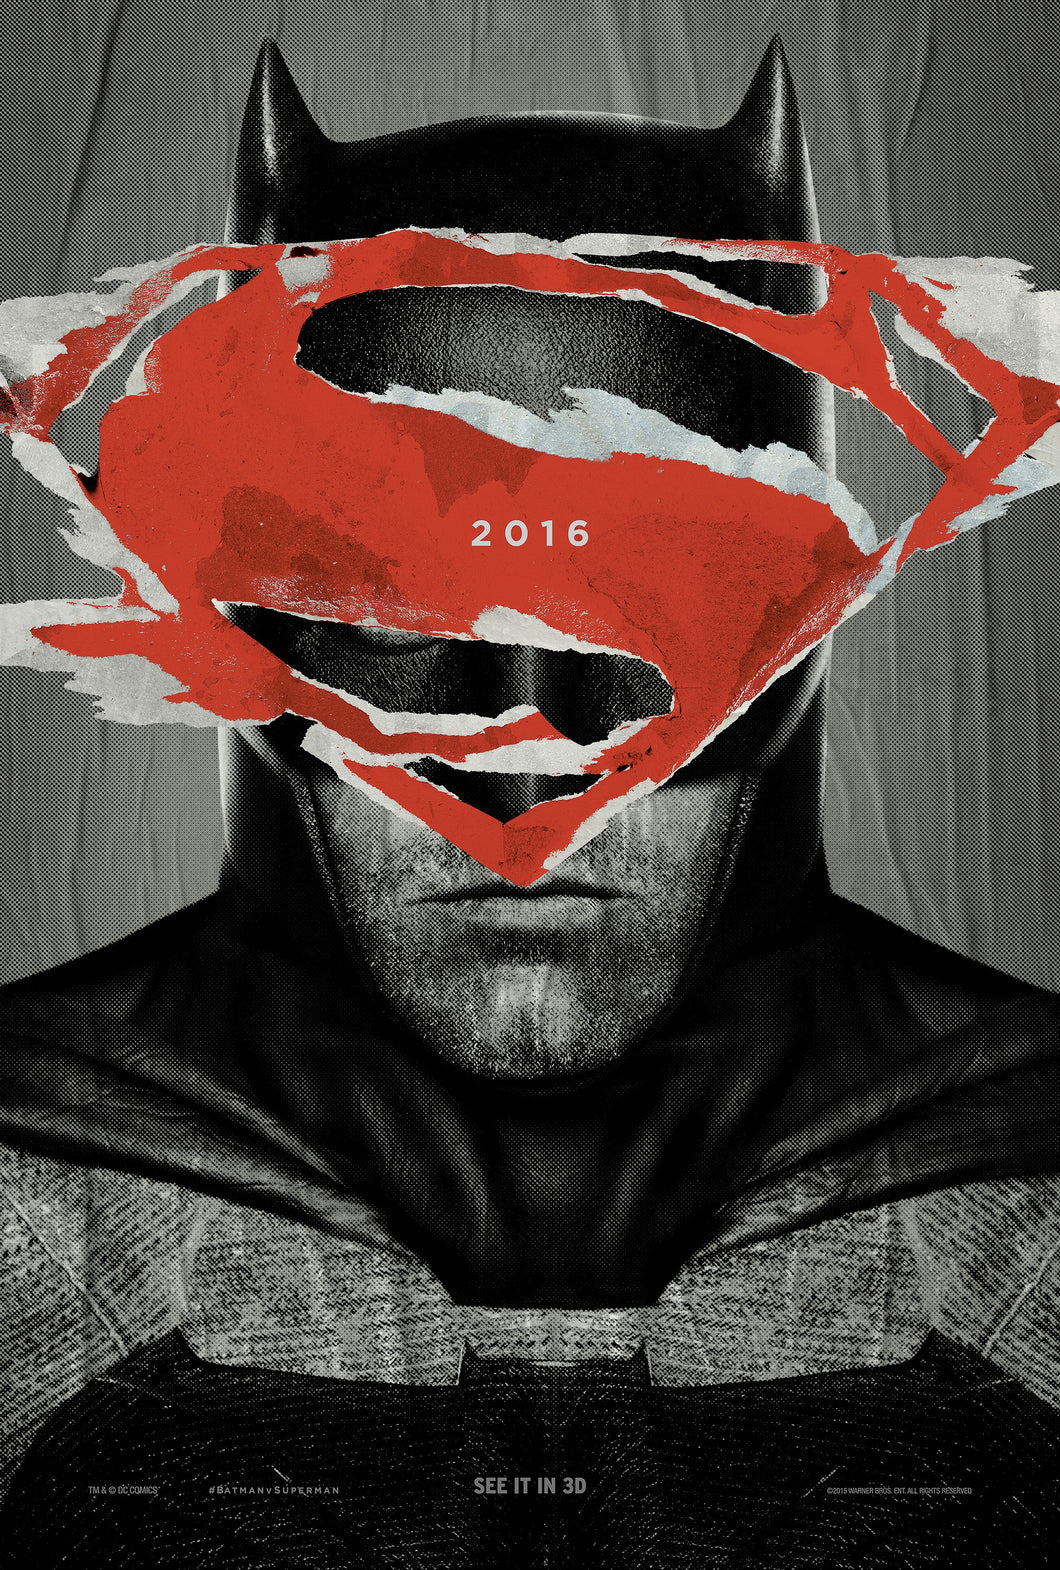 Poster Película Batman v Superman